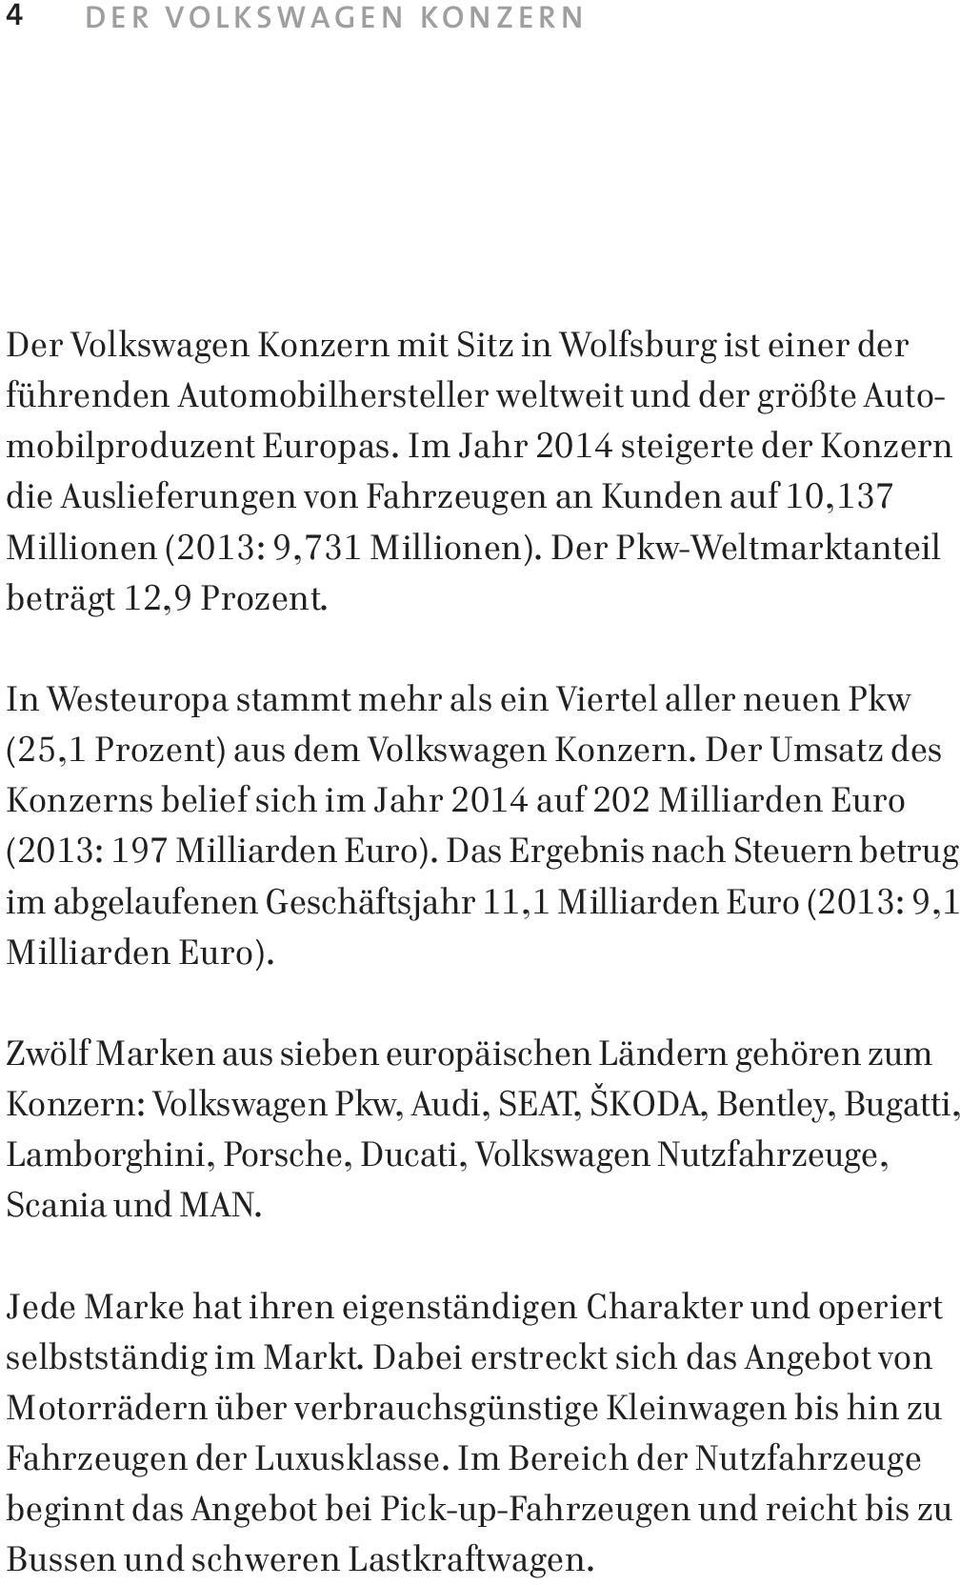 In Westeuropa stammt mehr als ein Viertel aller neuen Pkw (25,1 Prozent) aus dem Volkswagen Konzern.